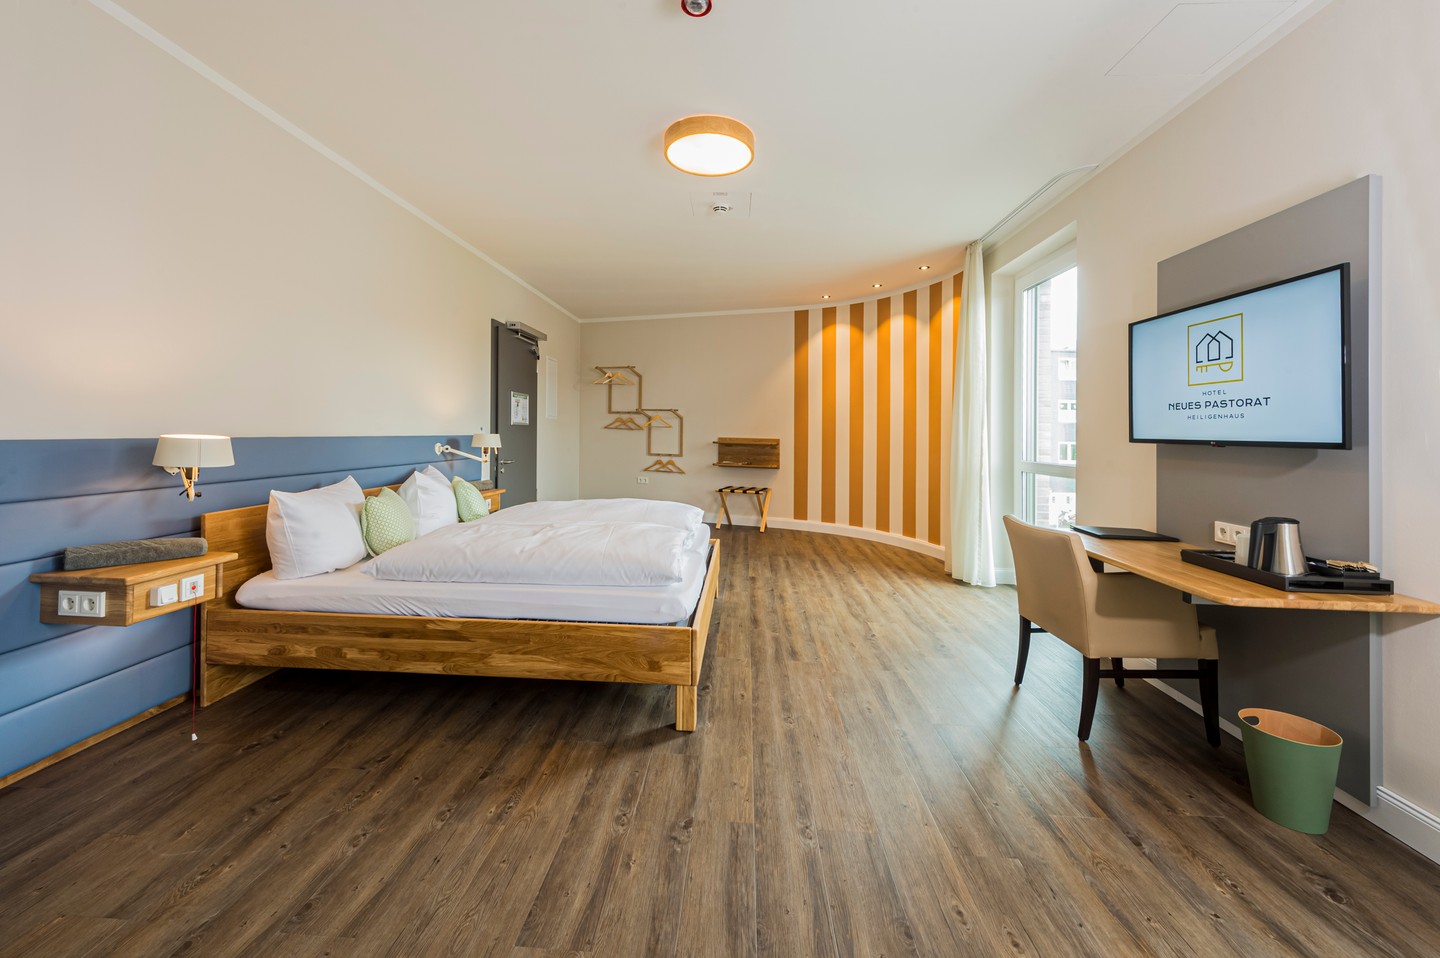 hotel_neues_pastorat_barrierefreies_Stadthotel_Heiligenhaus_doppelzimmer_barrierefrei_©MartinRaffeiner.jpg
				